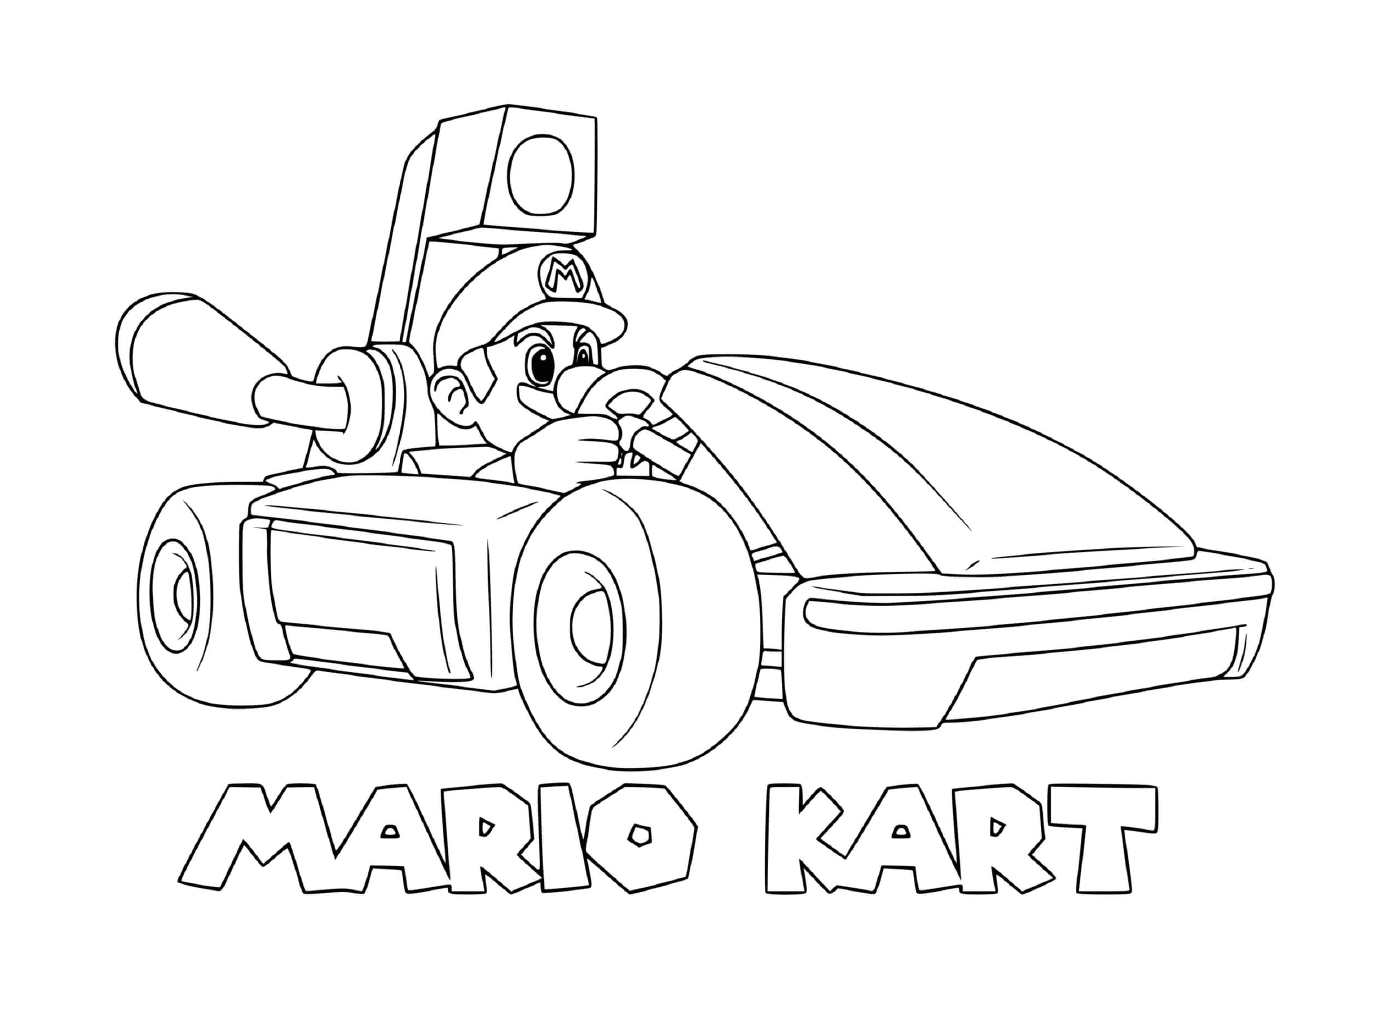  A Mario Kart character 